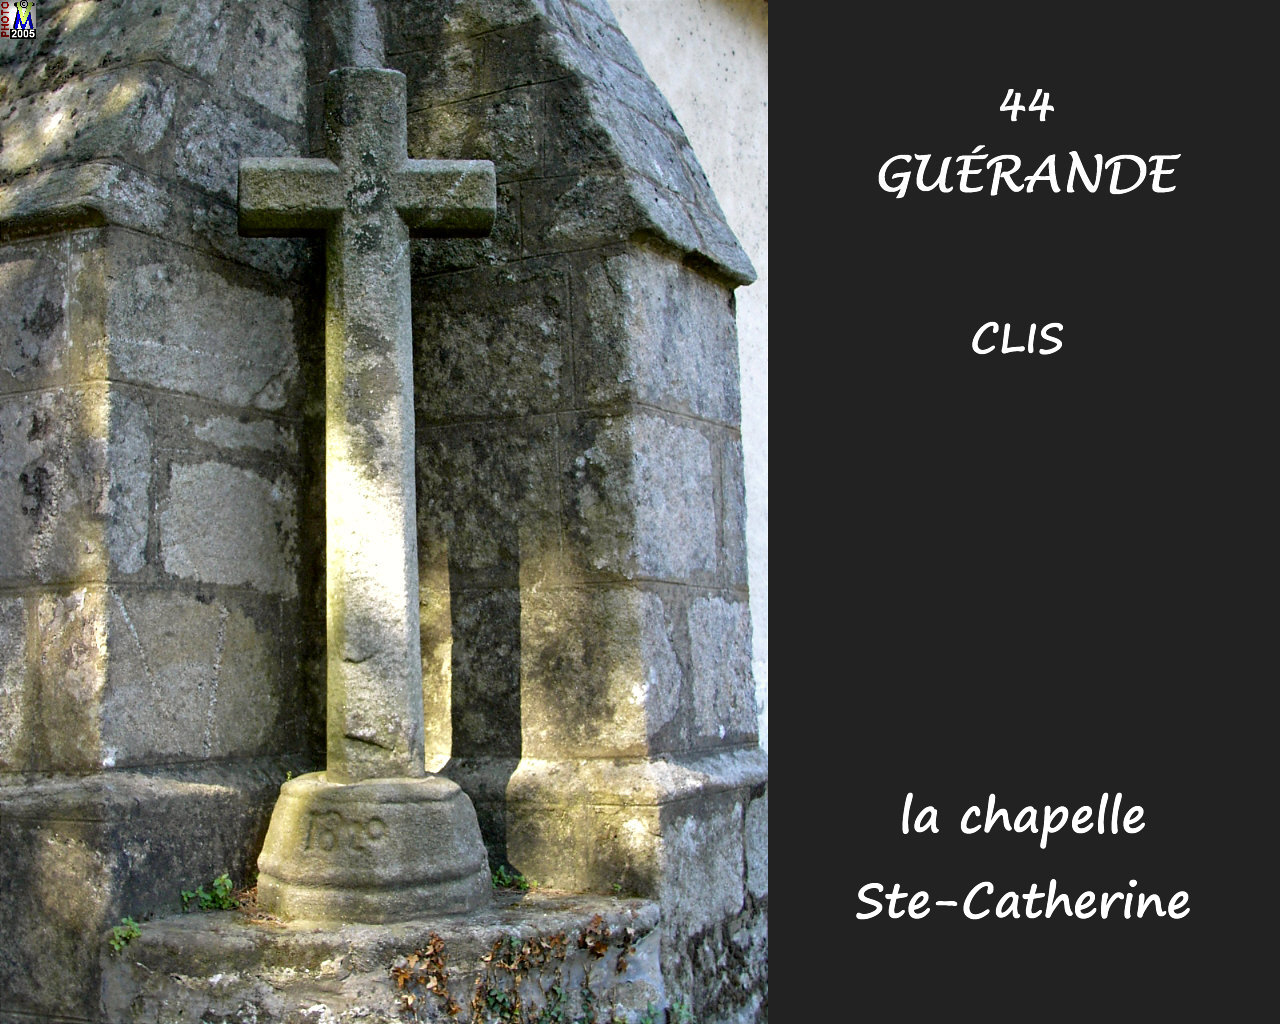 44GUERANDE--CLIS_chapelle_106.jpg